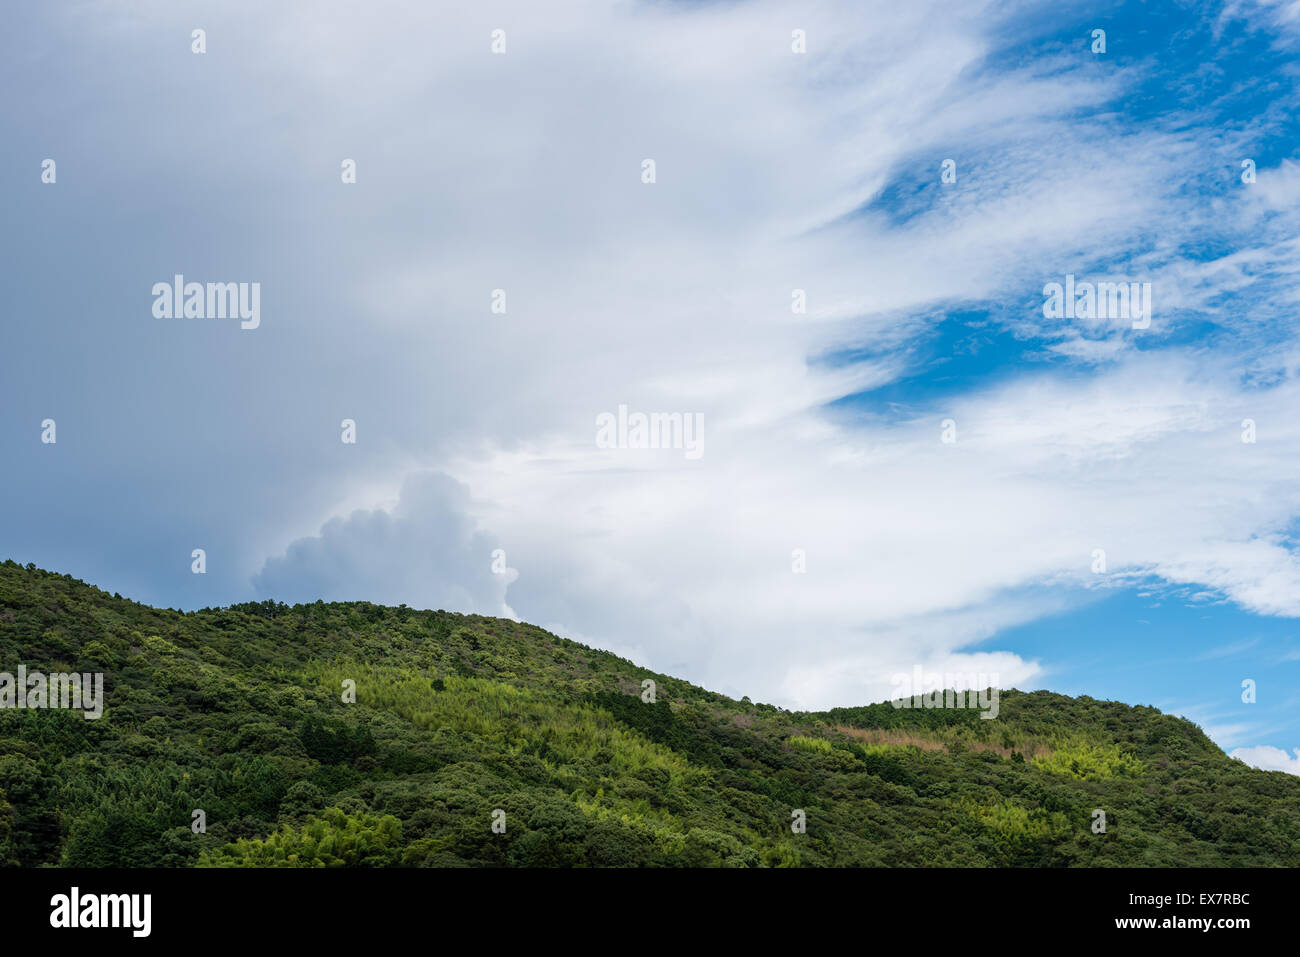 Dark nuvole temporalesche insinuando sulla altrimenti chiaro cielo blu con un albero verde montagna riempito in primo piano. Foto Stock